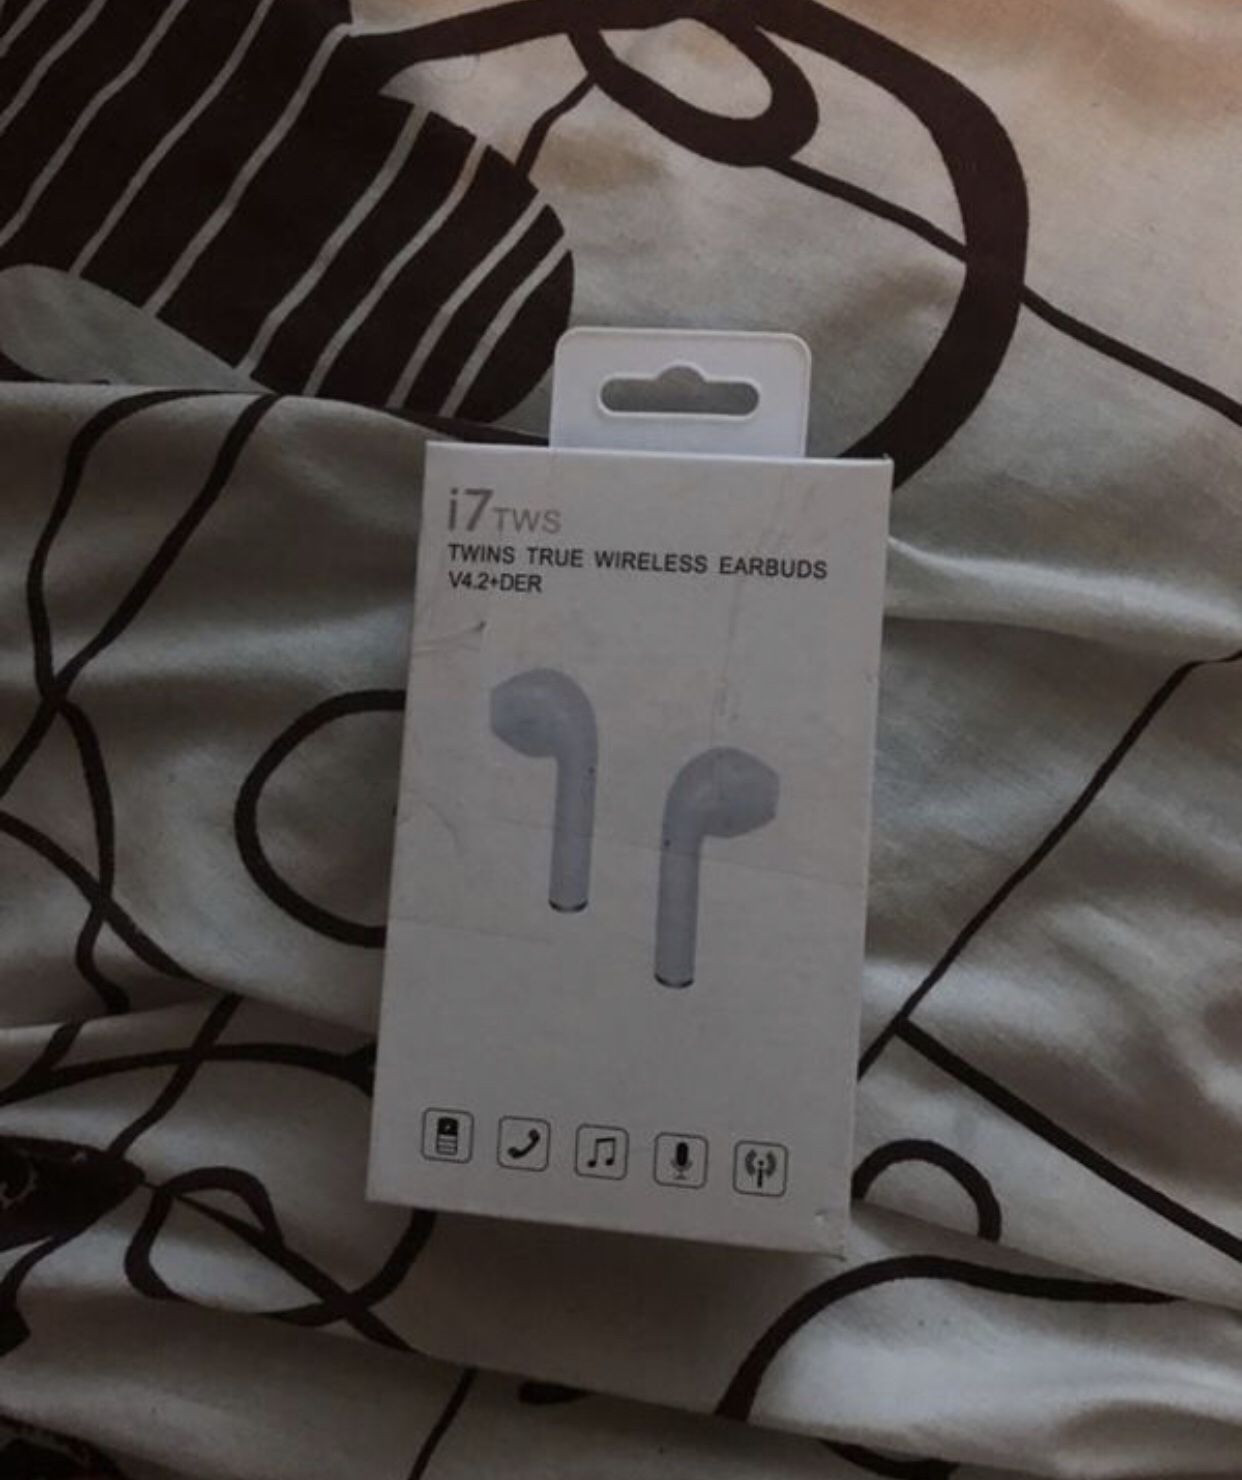 Wireless earbuds I7 TWS